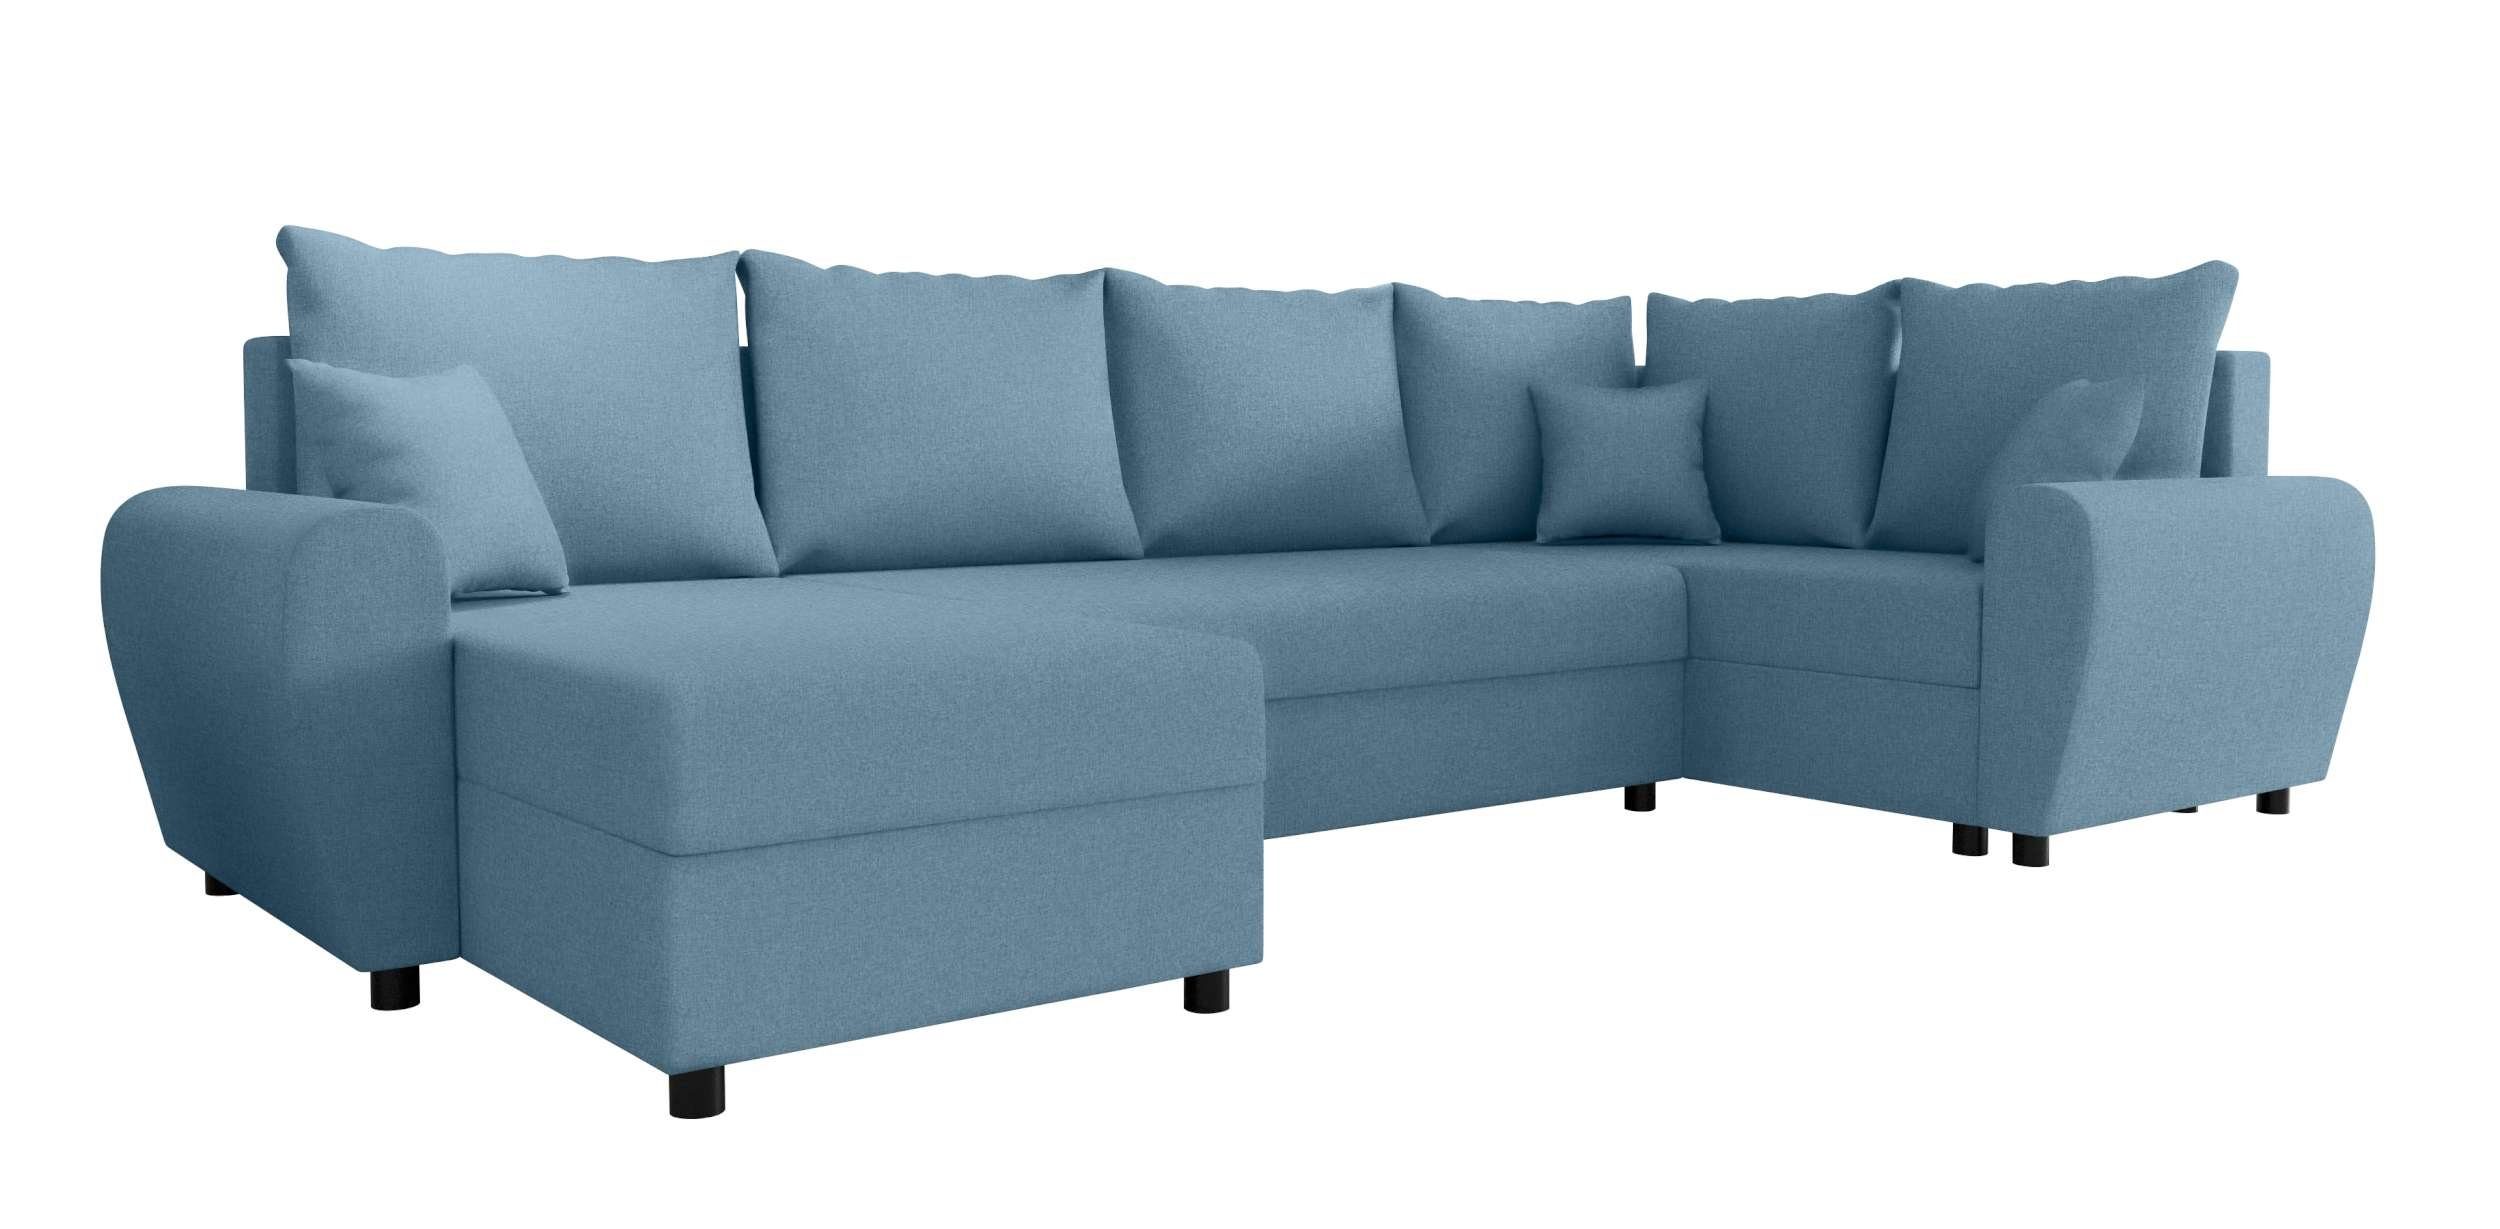 Bettkasten, Design Sofa, Bettfunktion, Modern Sitzkomfort, Stylefy mit U-Form, Wohnlandschaft Eckcouch, Haven, mit